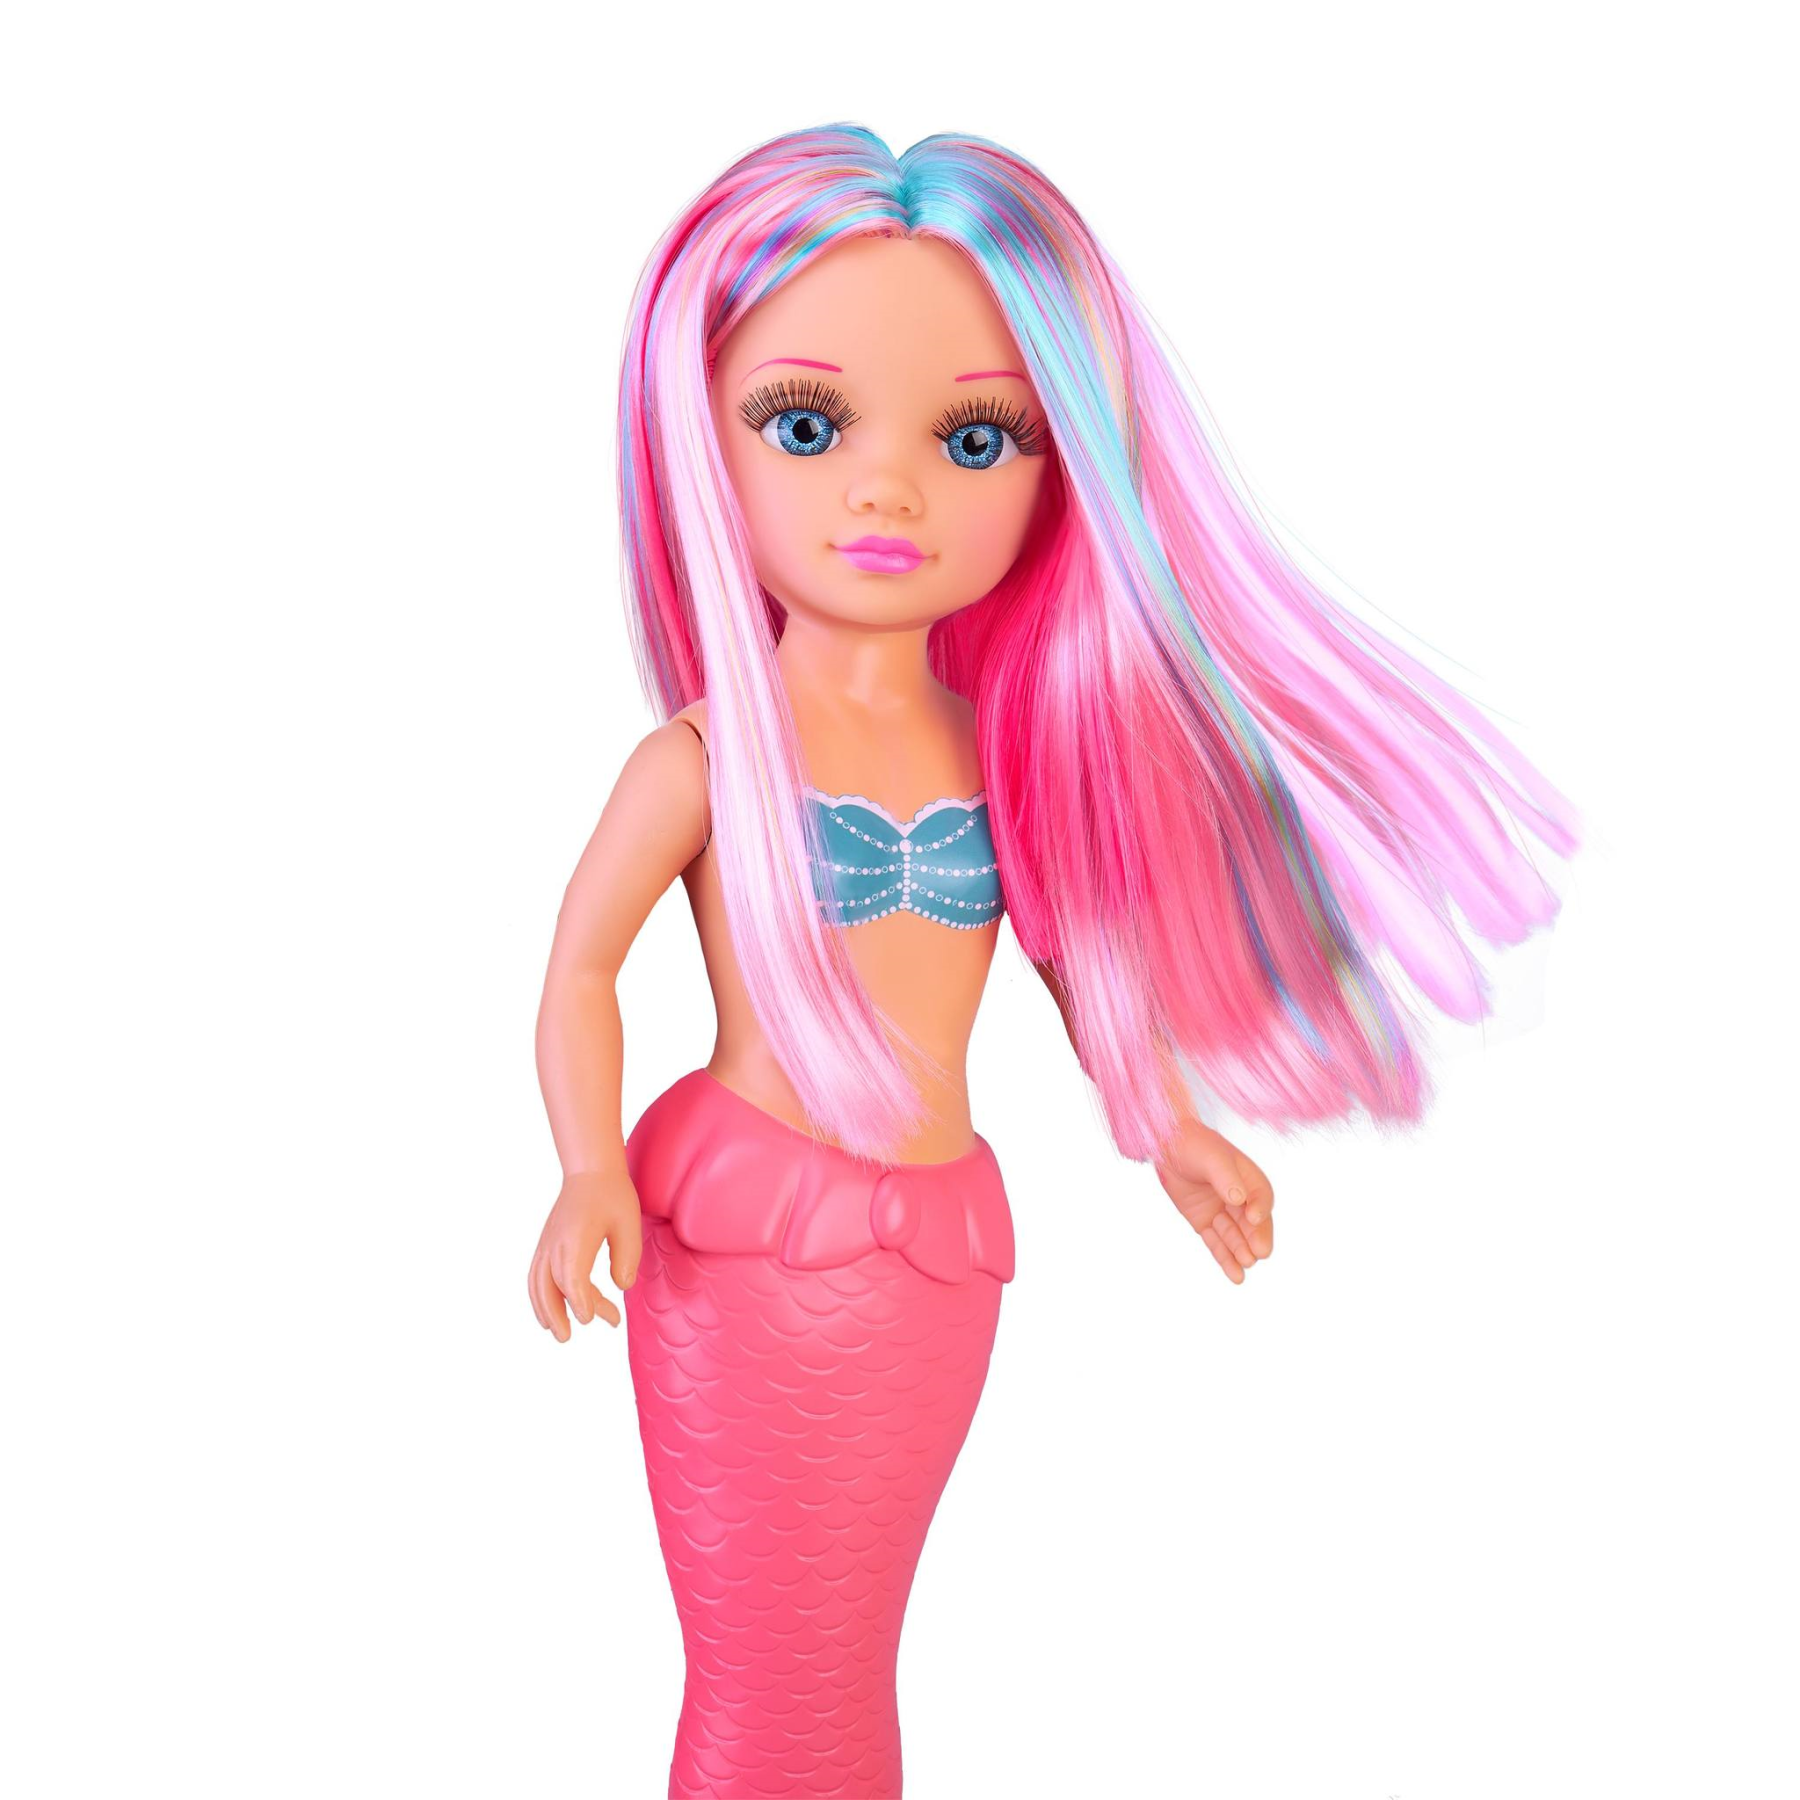 Nancy coral, bambola nancy da 42 cm sirenetta con coda in tessuto colorato, con lunghi capelli, per bambine/i da 3 anni - NANCY